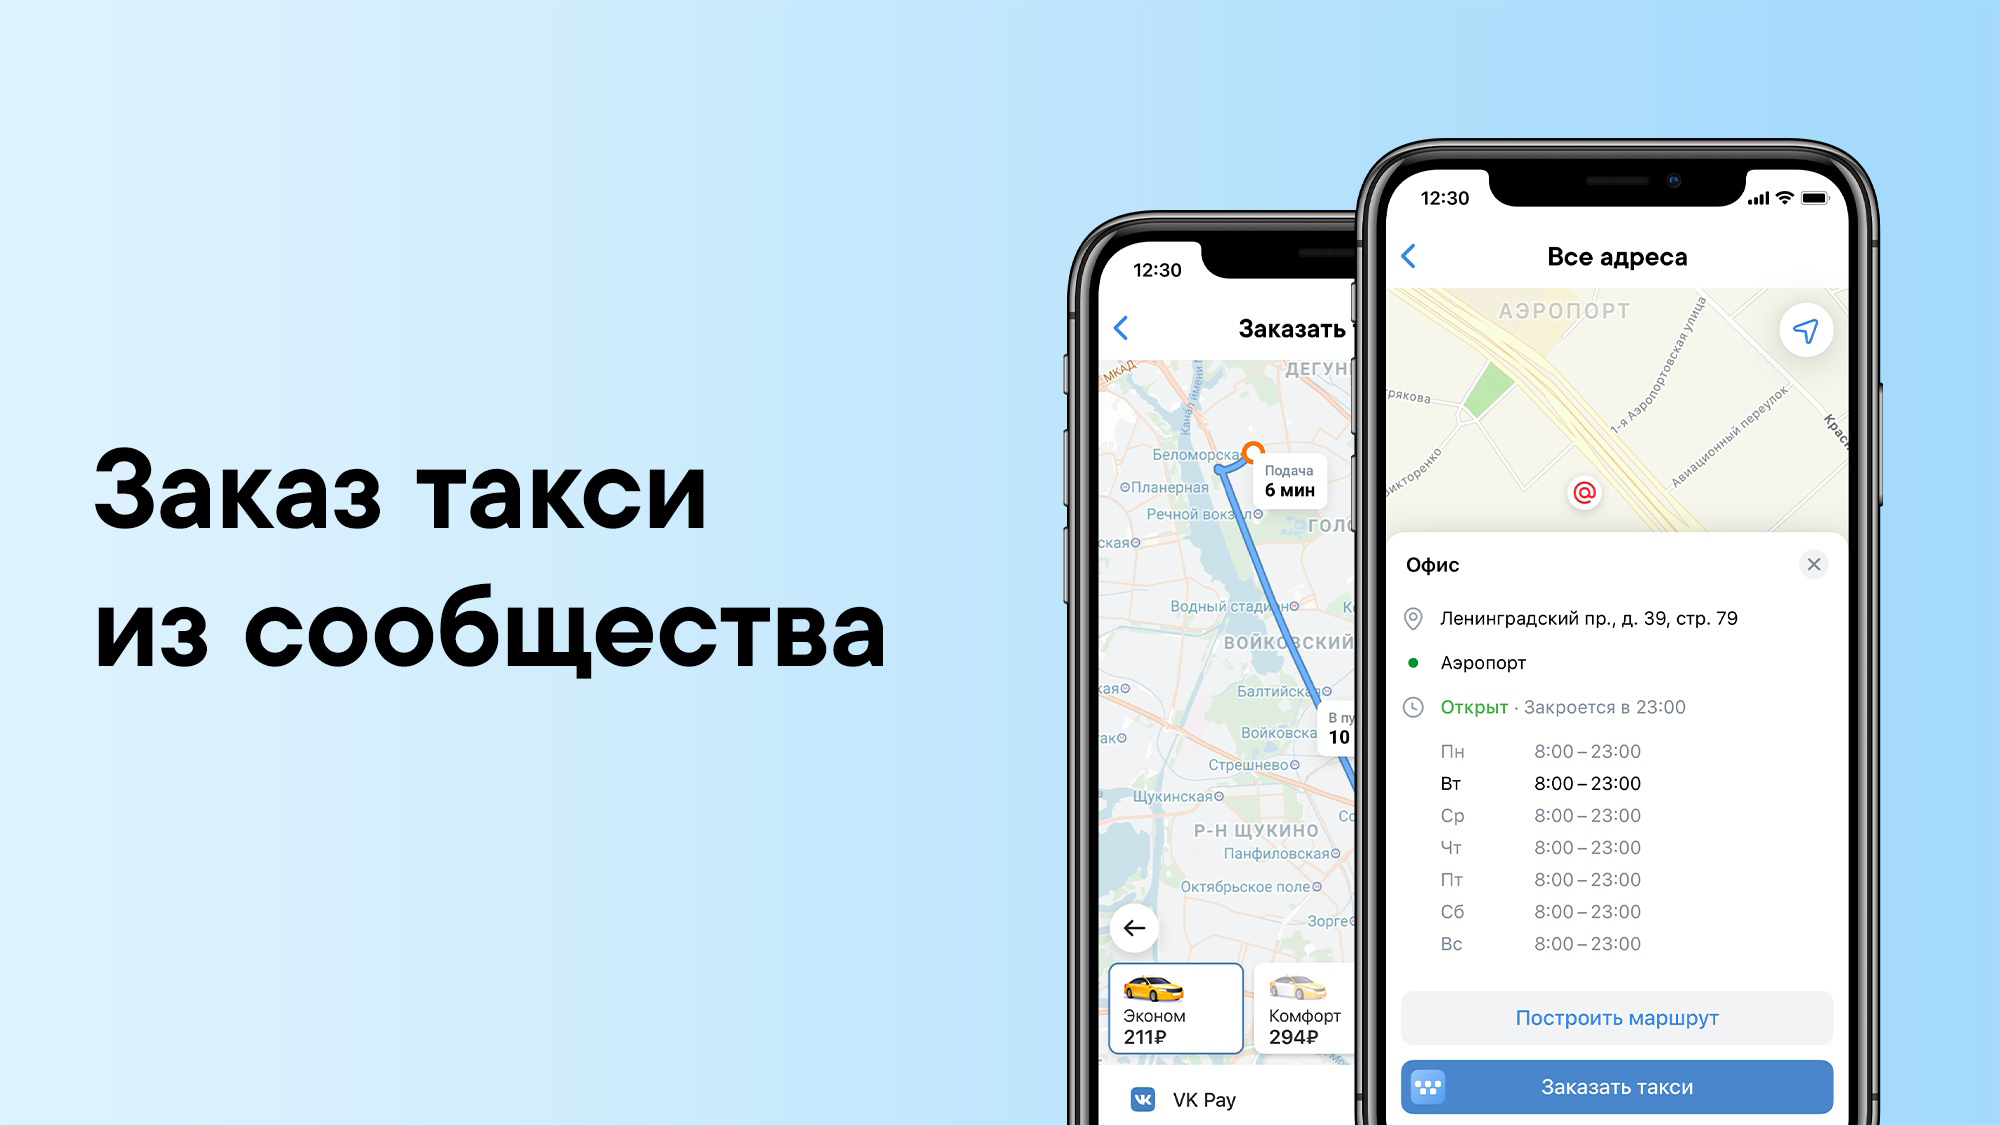 Заказ такси прямо из адреса сообщества ВКонтакте